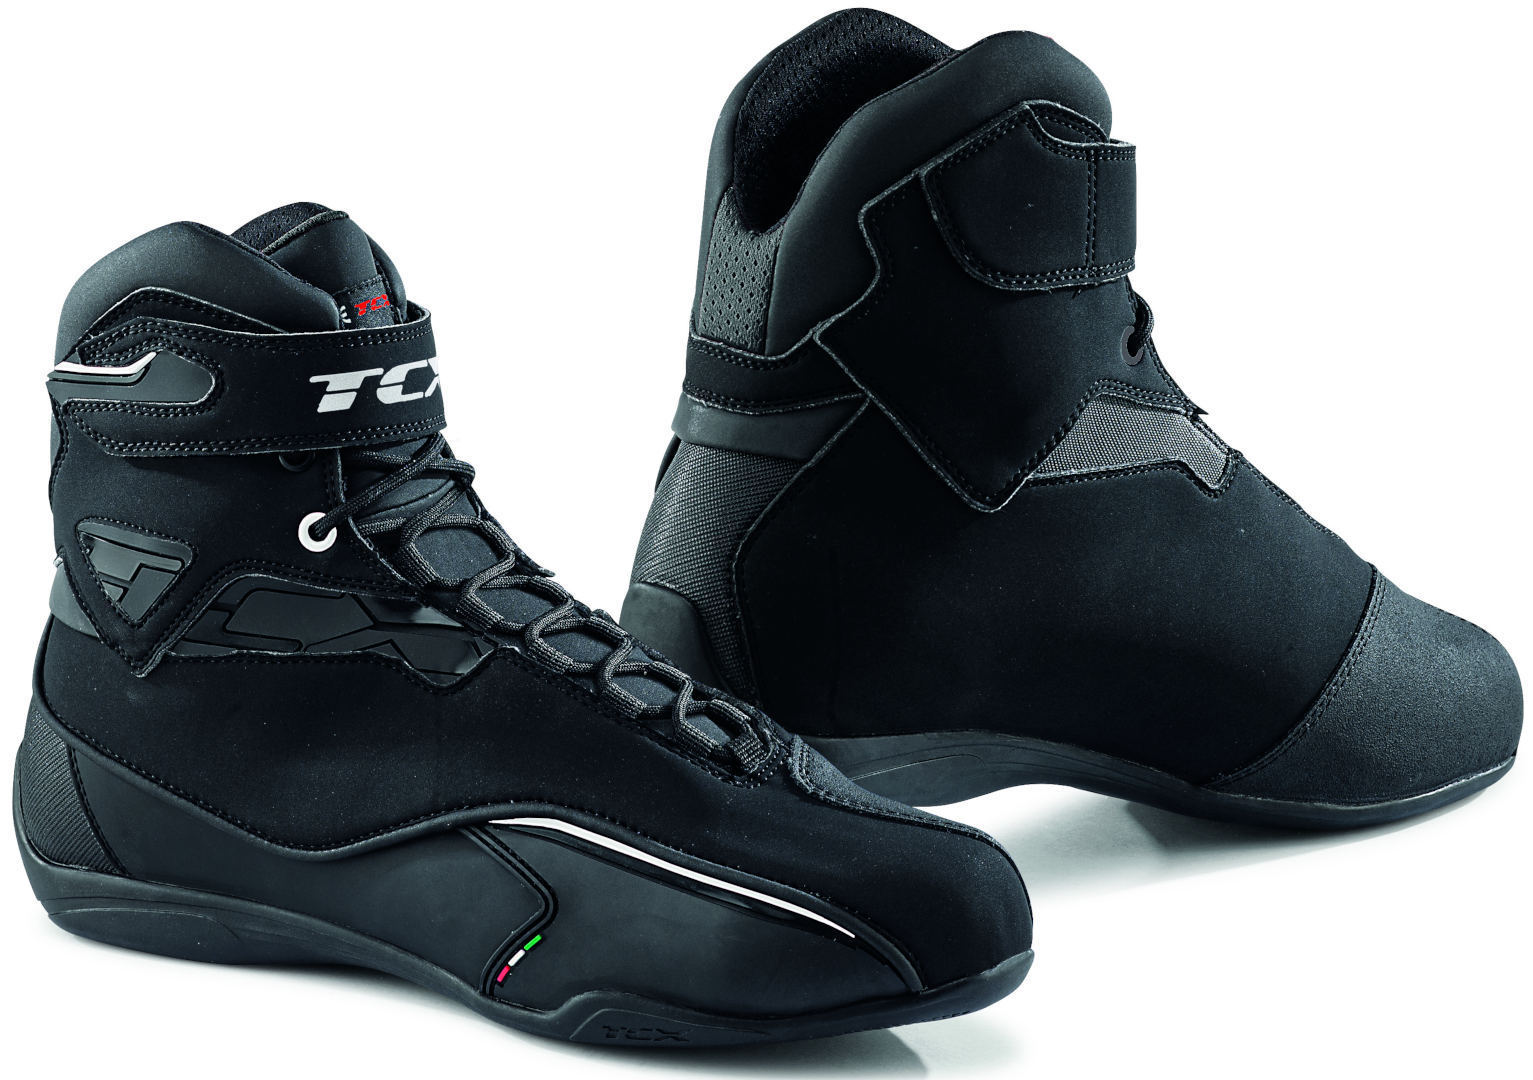 Обувь водонепроницаемая TCX Zeta мотоциклетная, черный